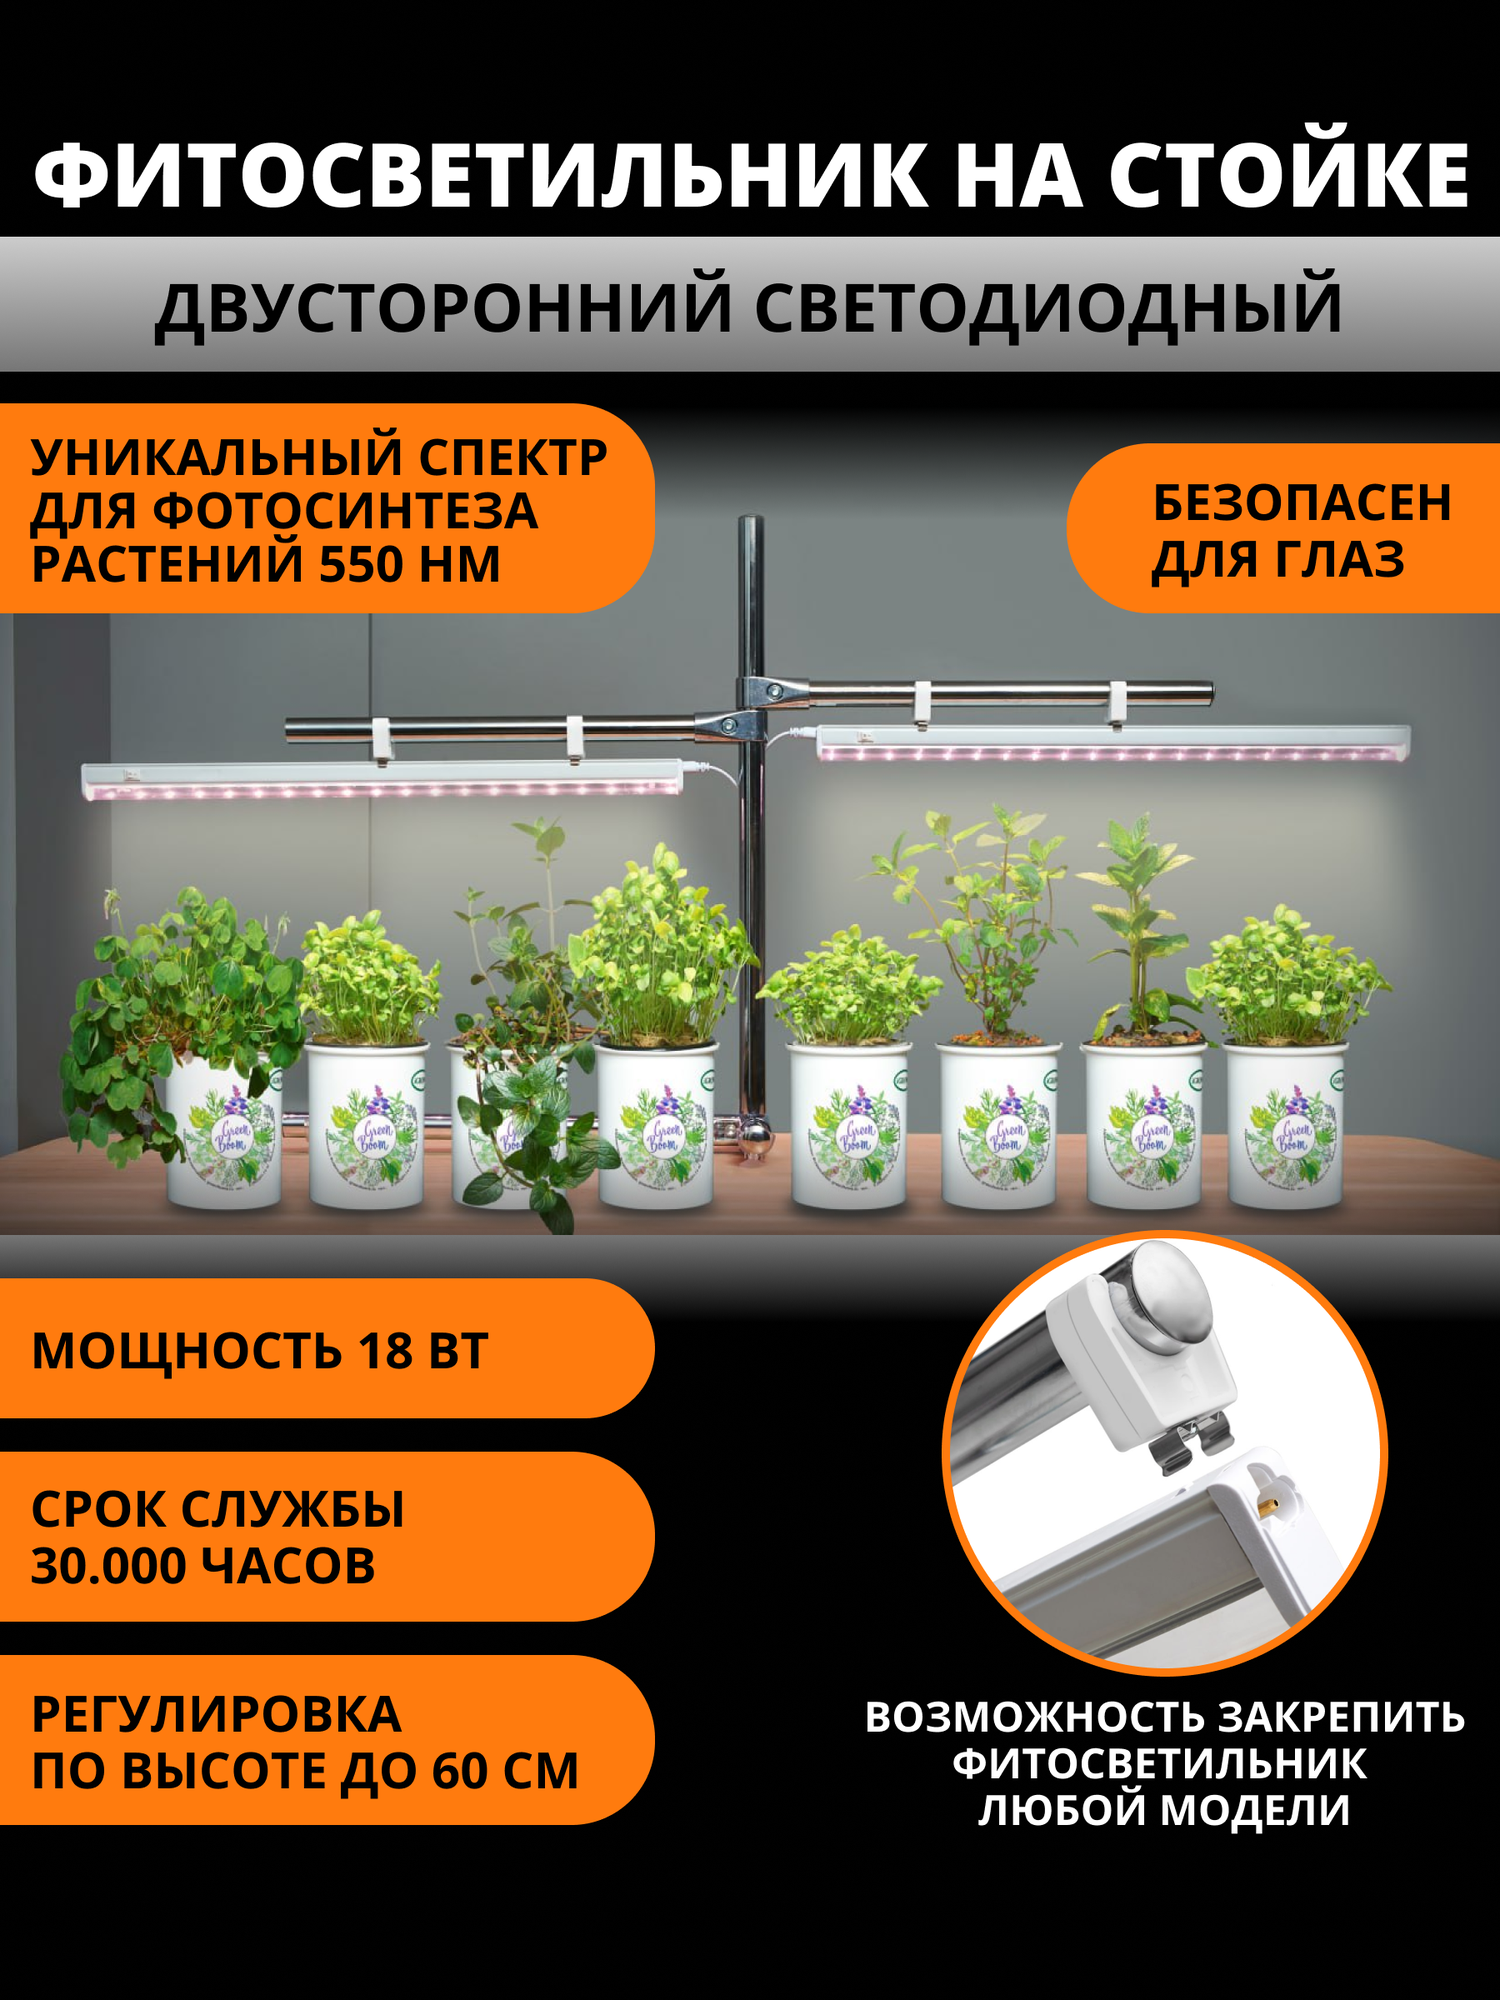 Фитосветильник для растений на стойке двусторонний светодиодный LI-P20-10 W/SPSBIP40 WHITE Cпектр для рассады 550 нм 10 Вт  выключатель на корпусе